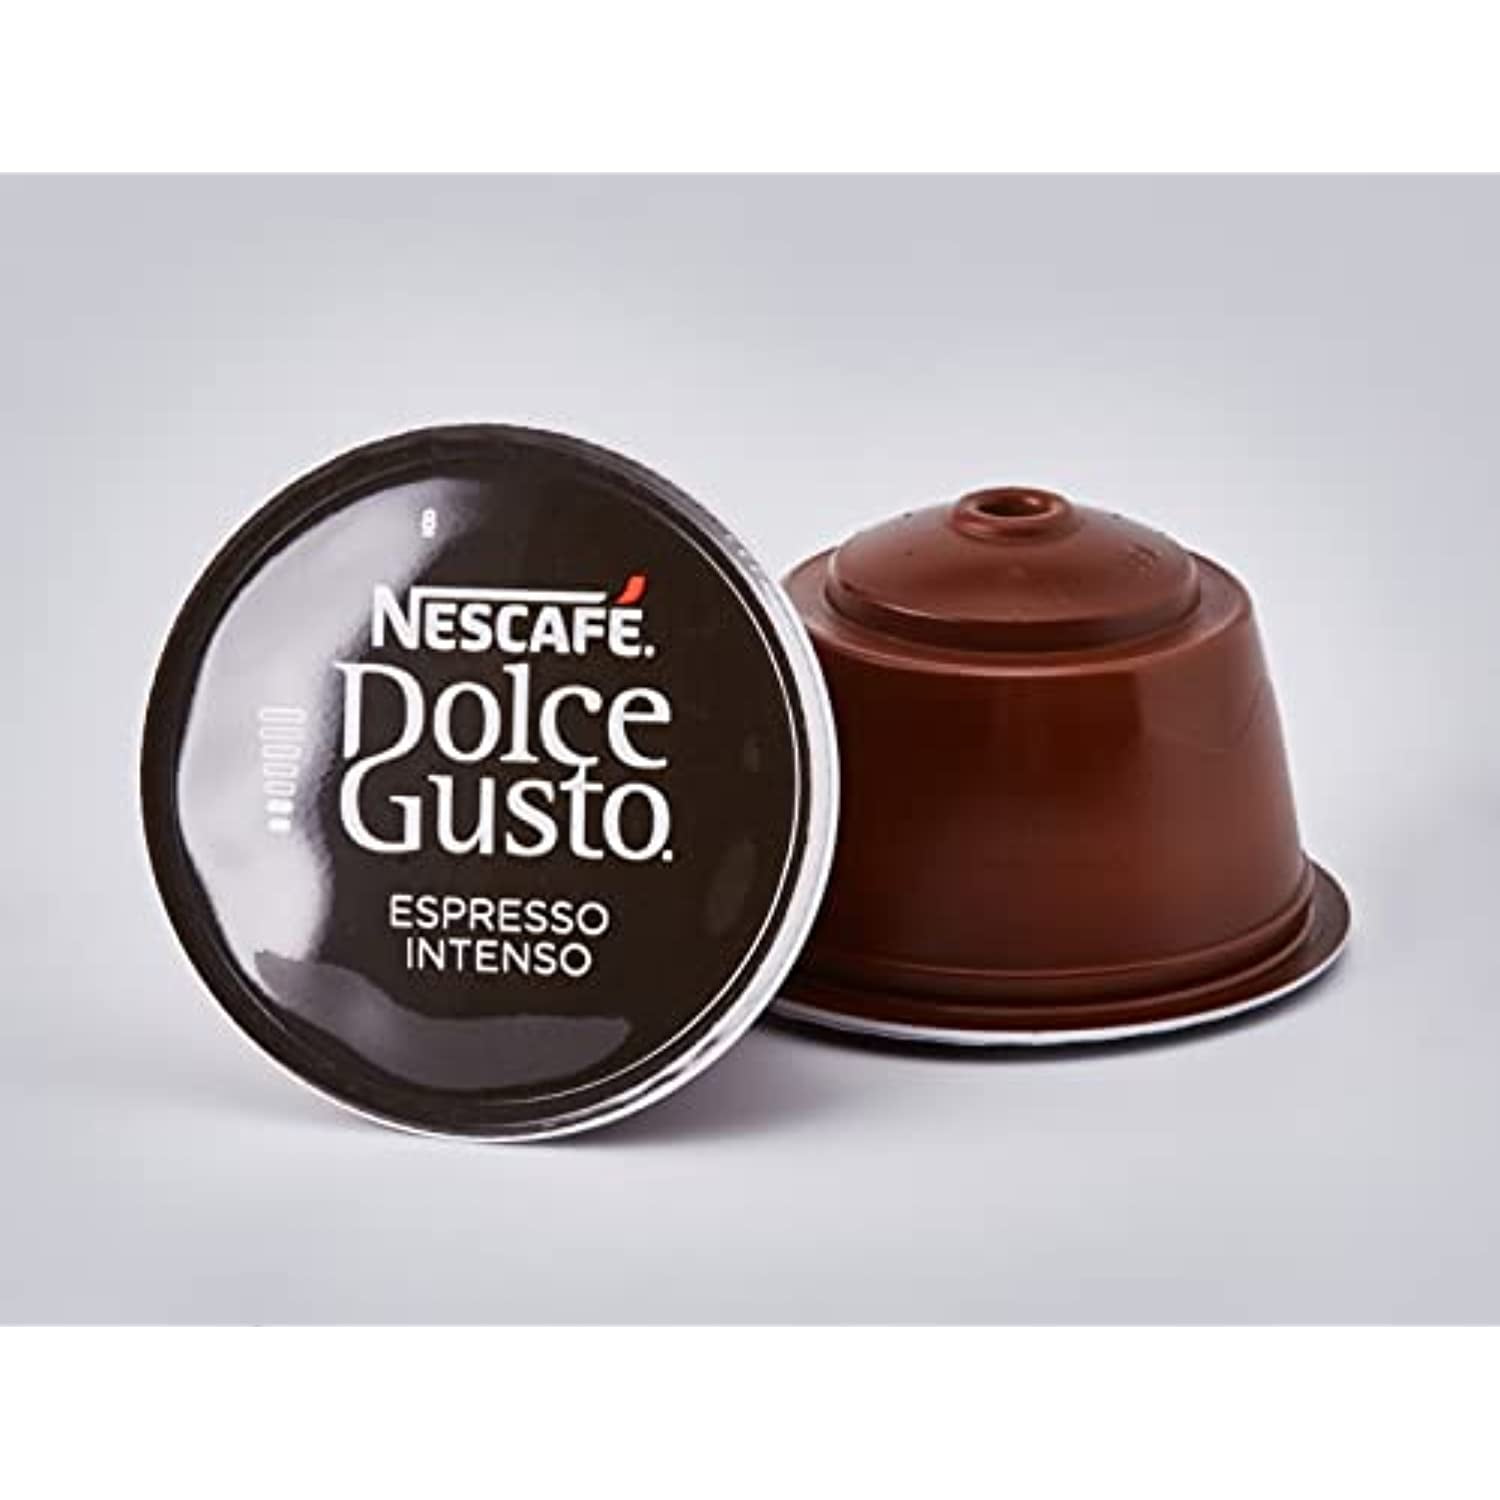 90 capsule Nescafé Dolce Gusto Espresso Intenso